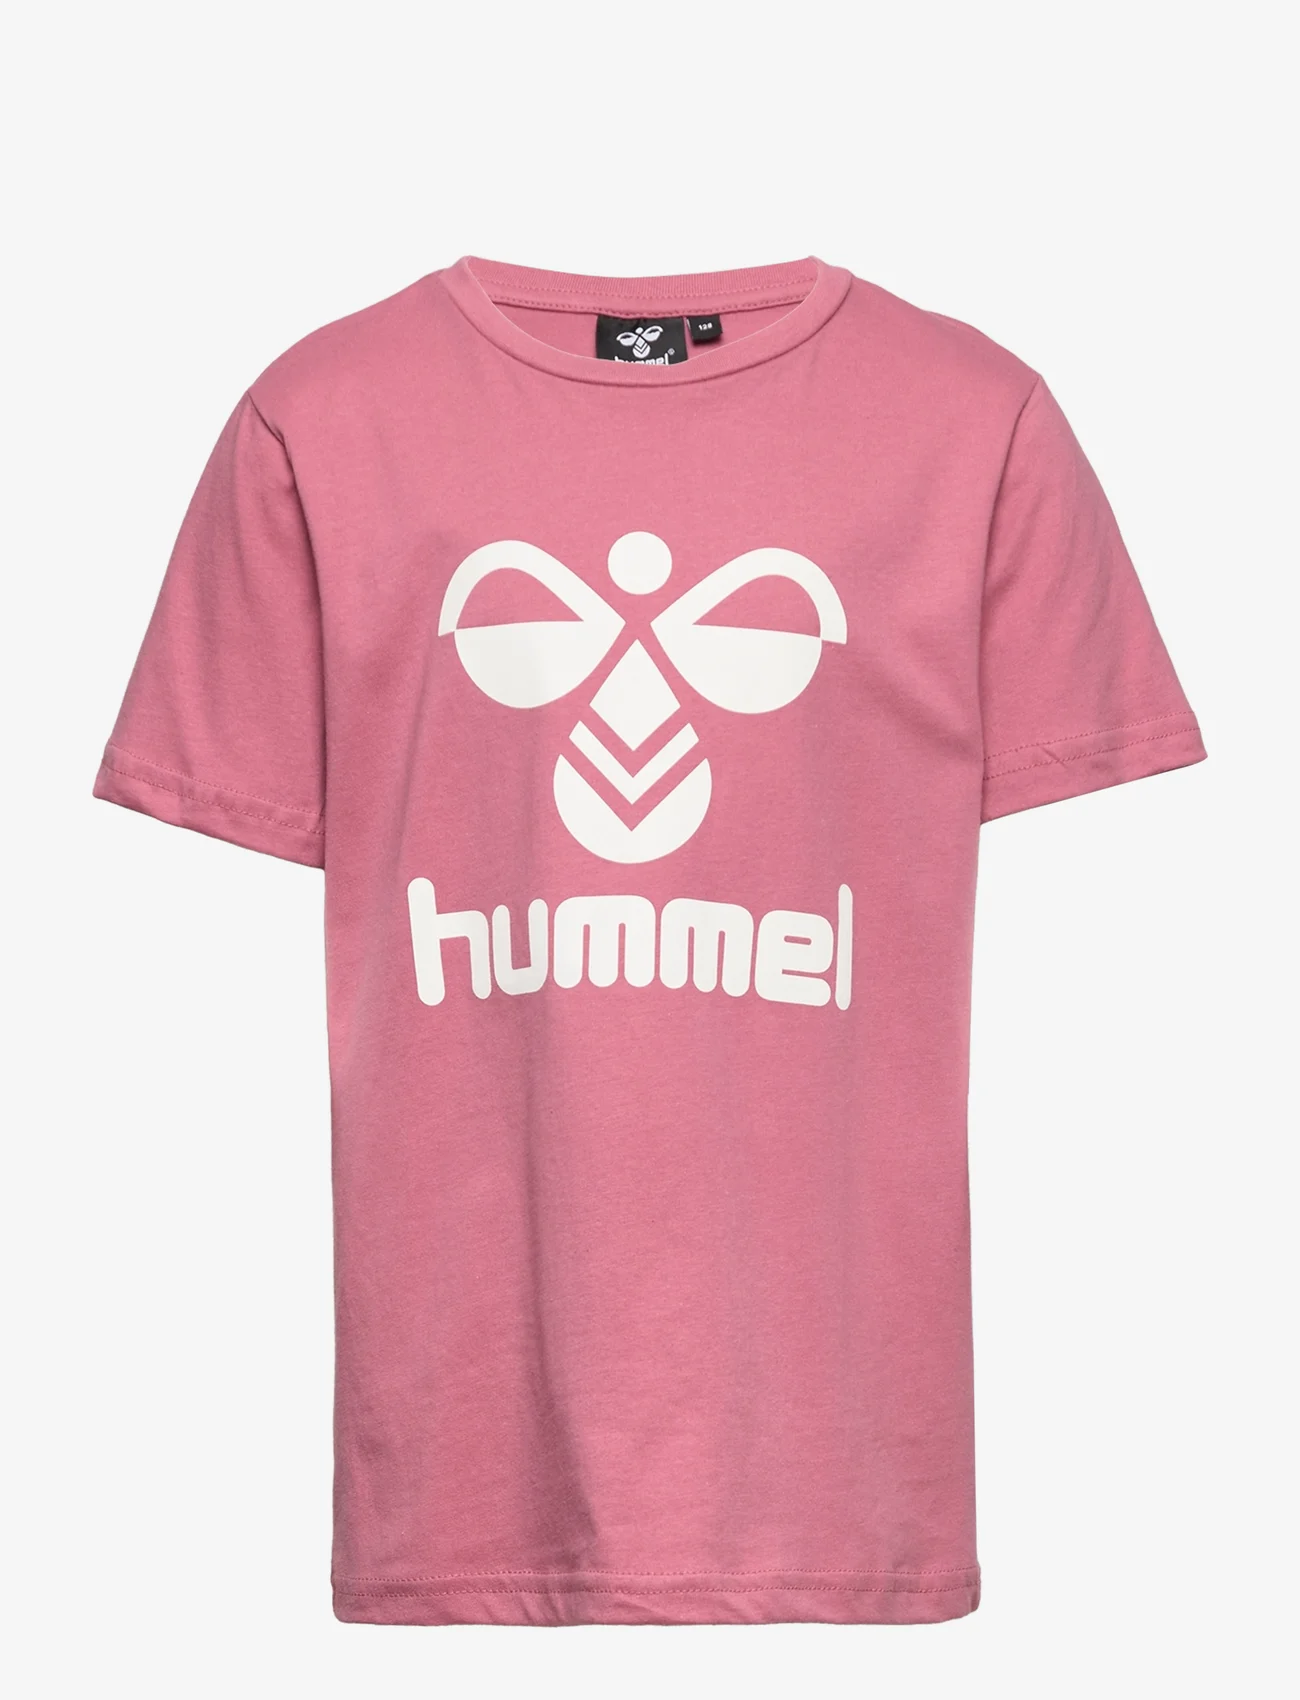 Hummel - hmlTRES T-SHIRT S/S - kurzärmelig - heather rose - 0